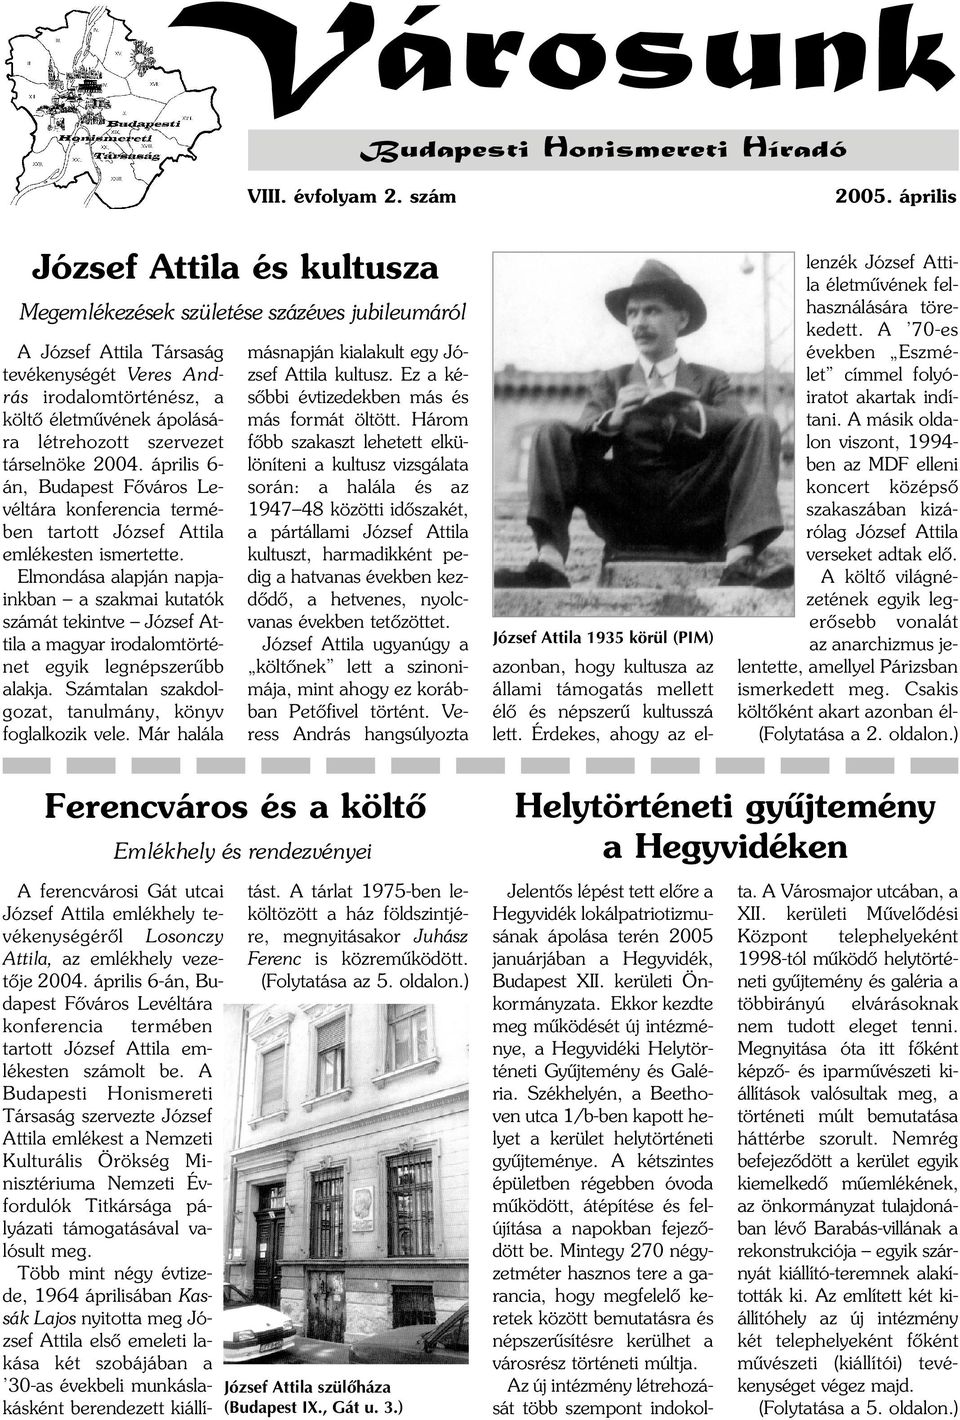 szervezet társelnöke 2004. április 6- án, Budapest Fõváros Levéltára konferencia termében tartott József Attila emlékesten ismertette.